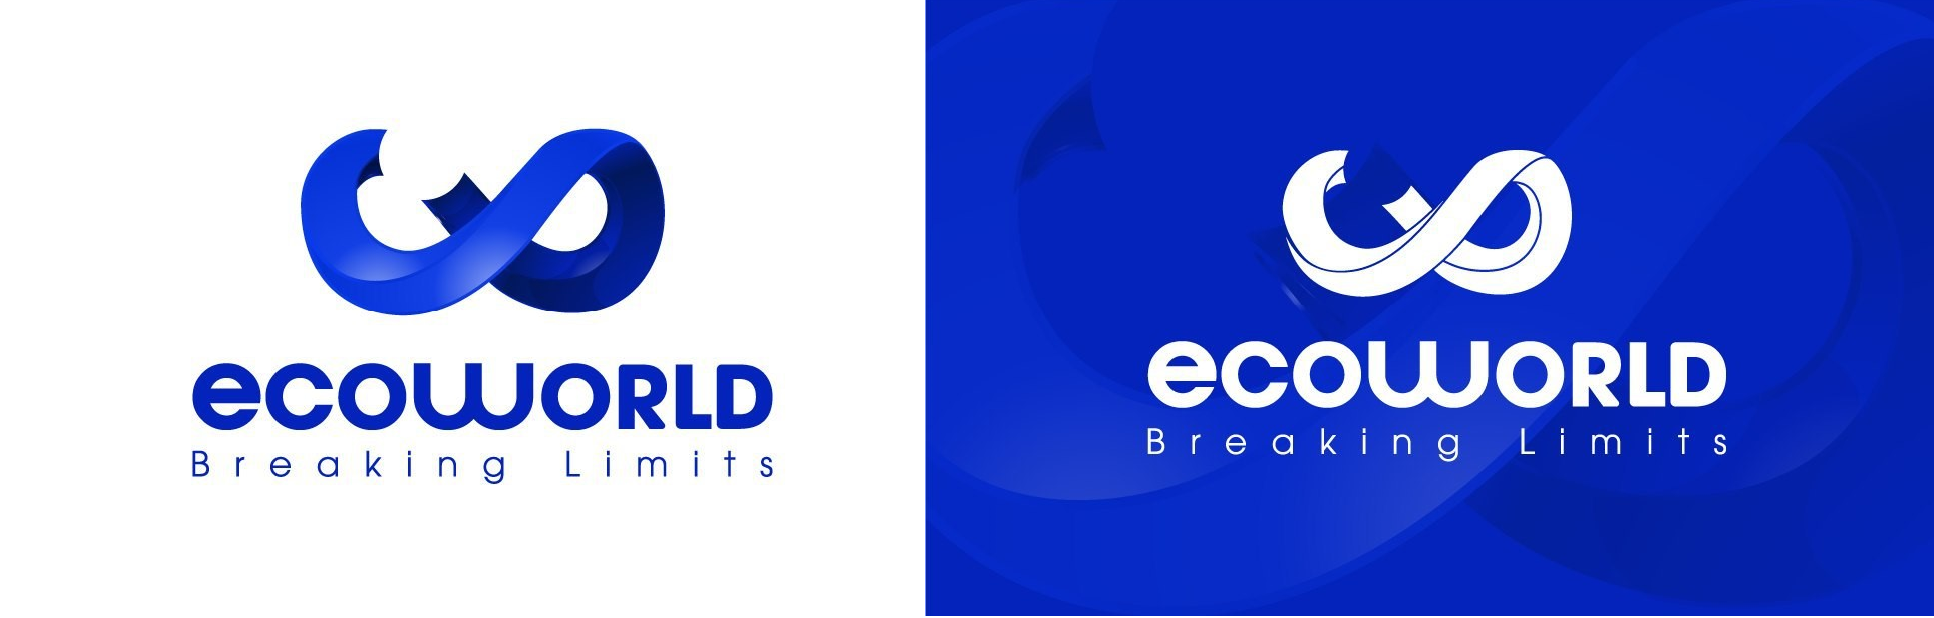 Hình ảnh logo mới của Ecoworld